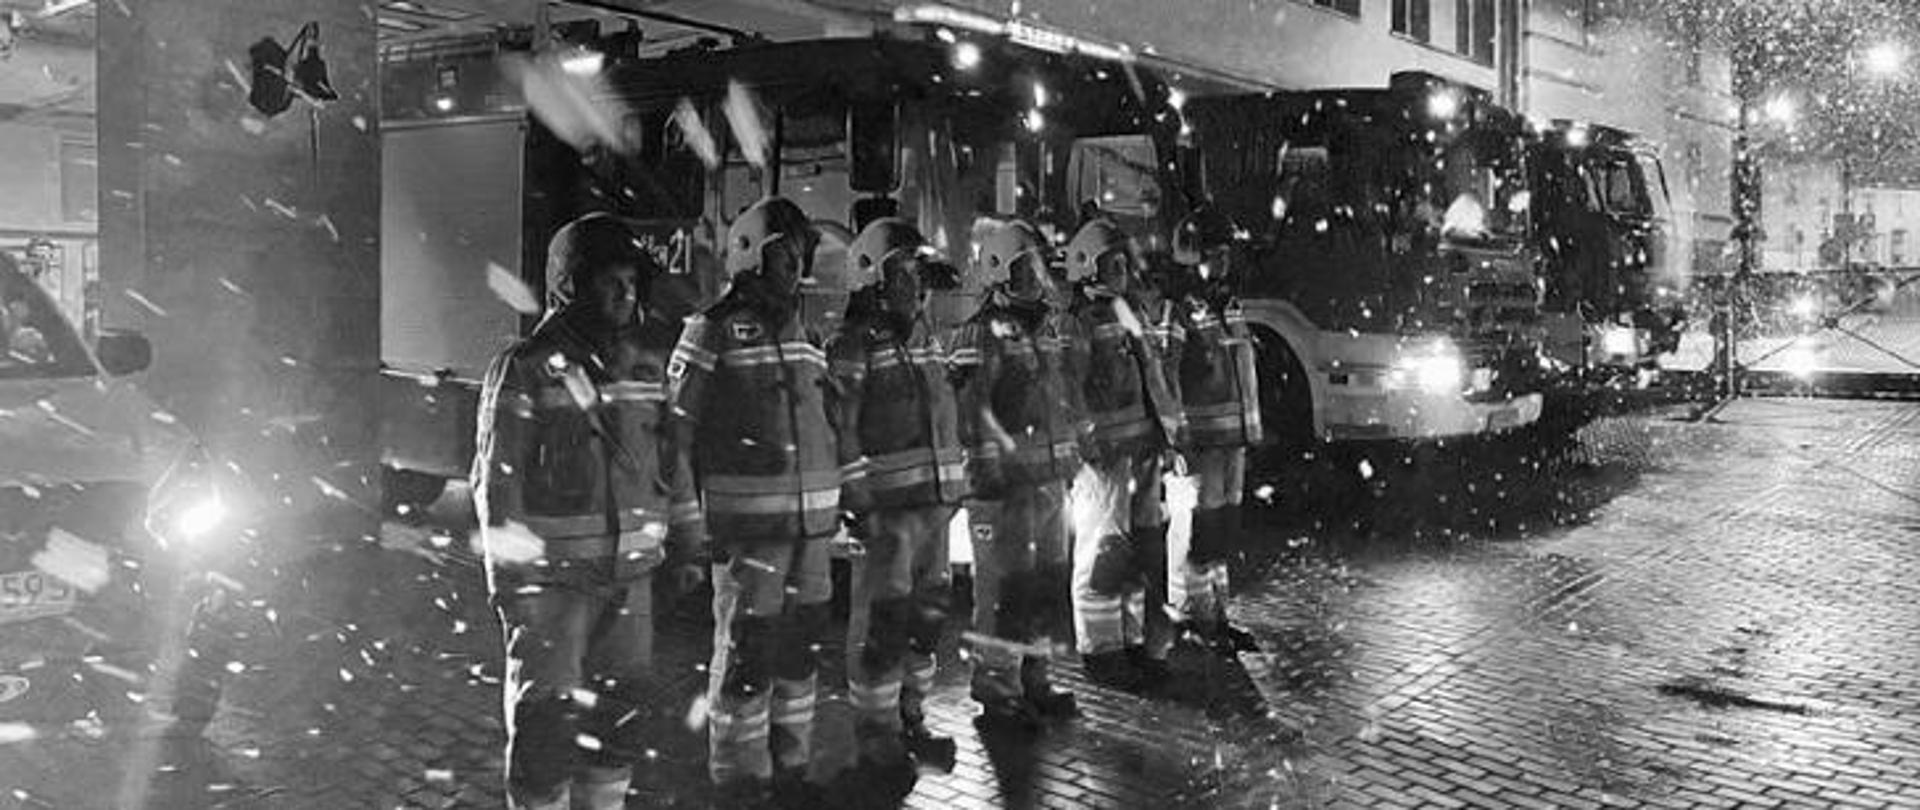 Zdjęcie żałobne. Zbiórka przed remizą, oddanie hołdu strażakom, którzy zginęli tragicznie.